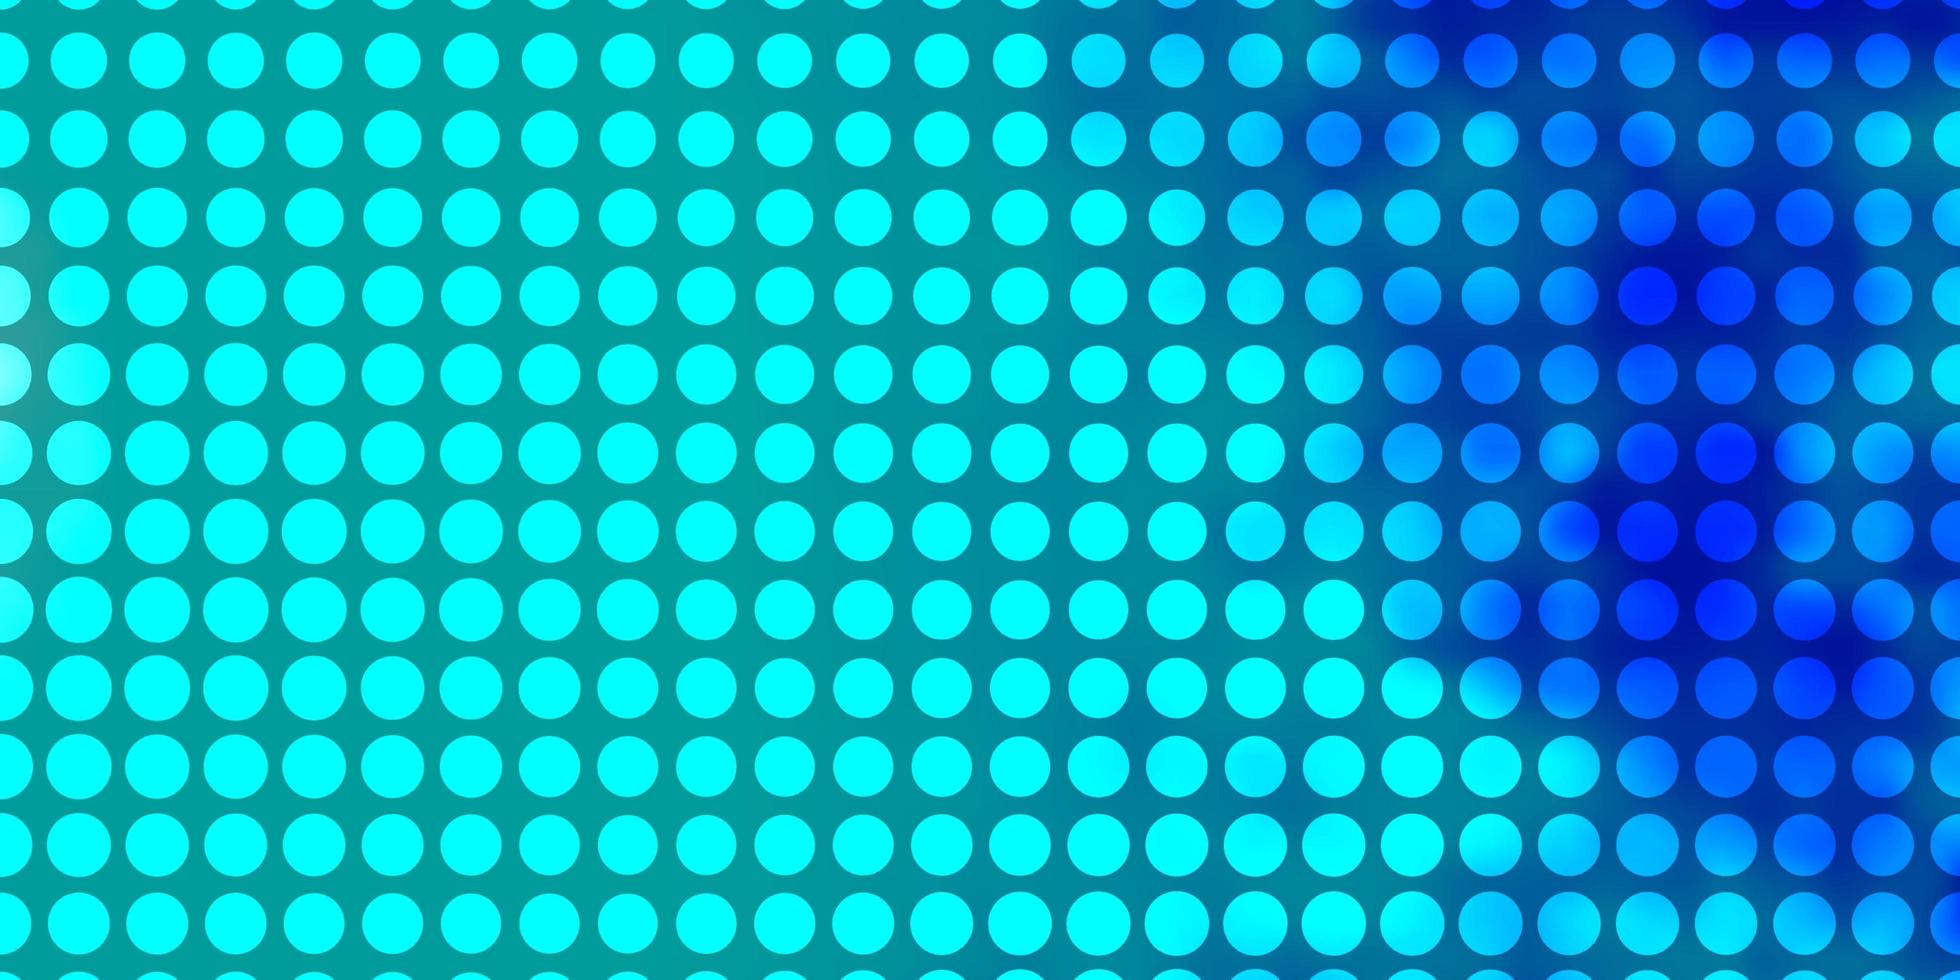 fond de vecteur bleu clair avec des cercles.